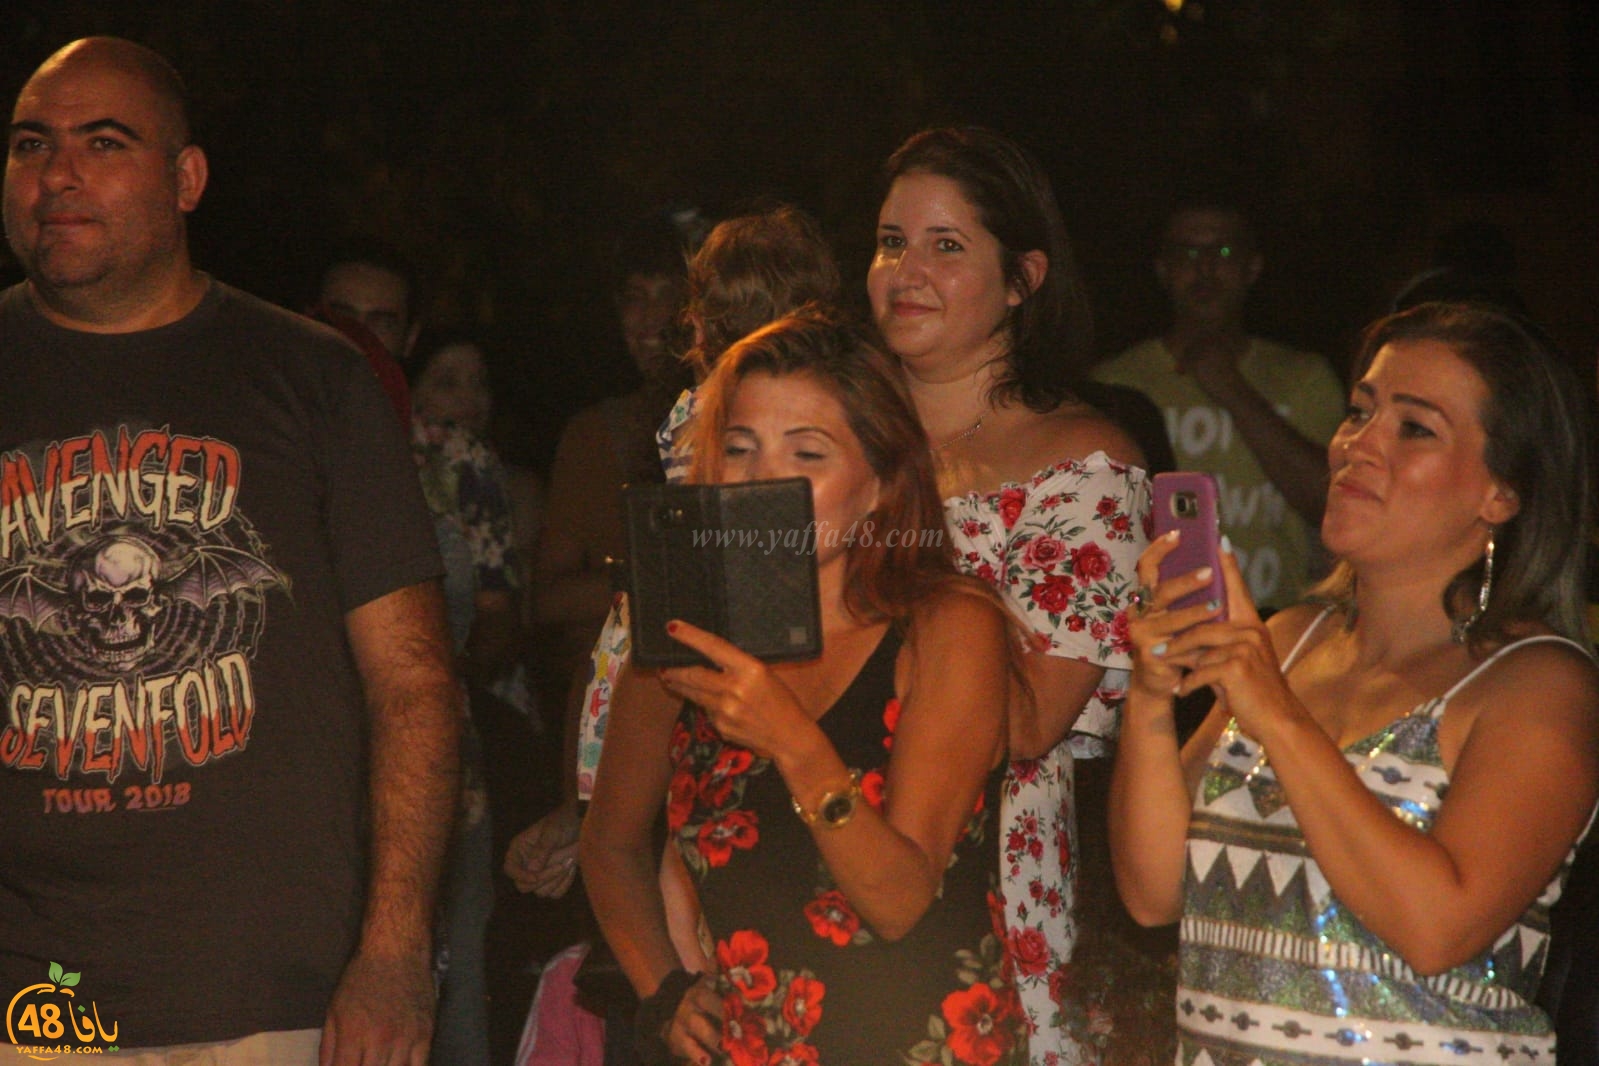  بالصور: اليوم الأول لمهرجان يافوية في مسرح السرايا العربي بيافا